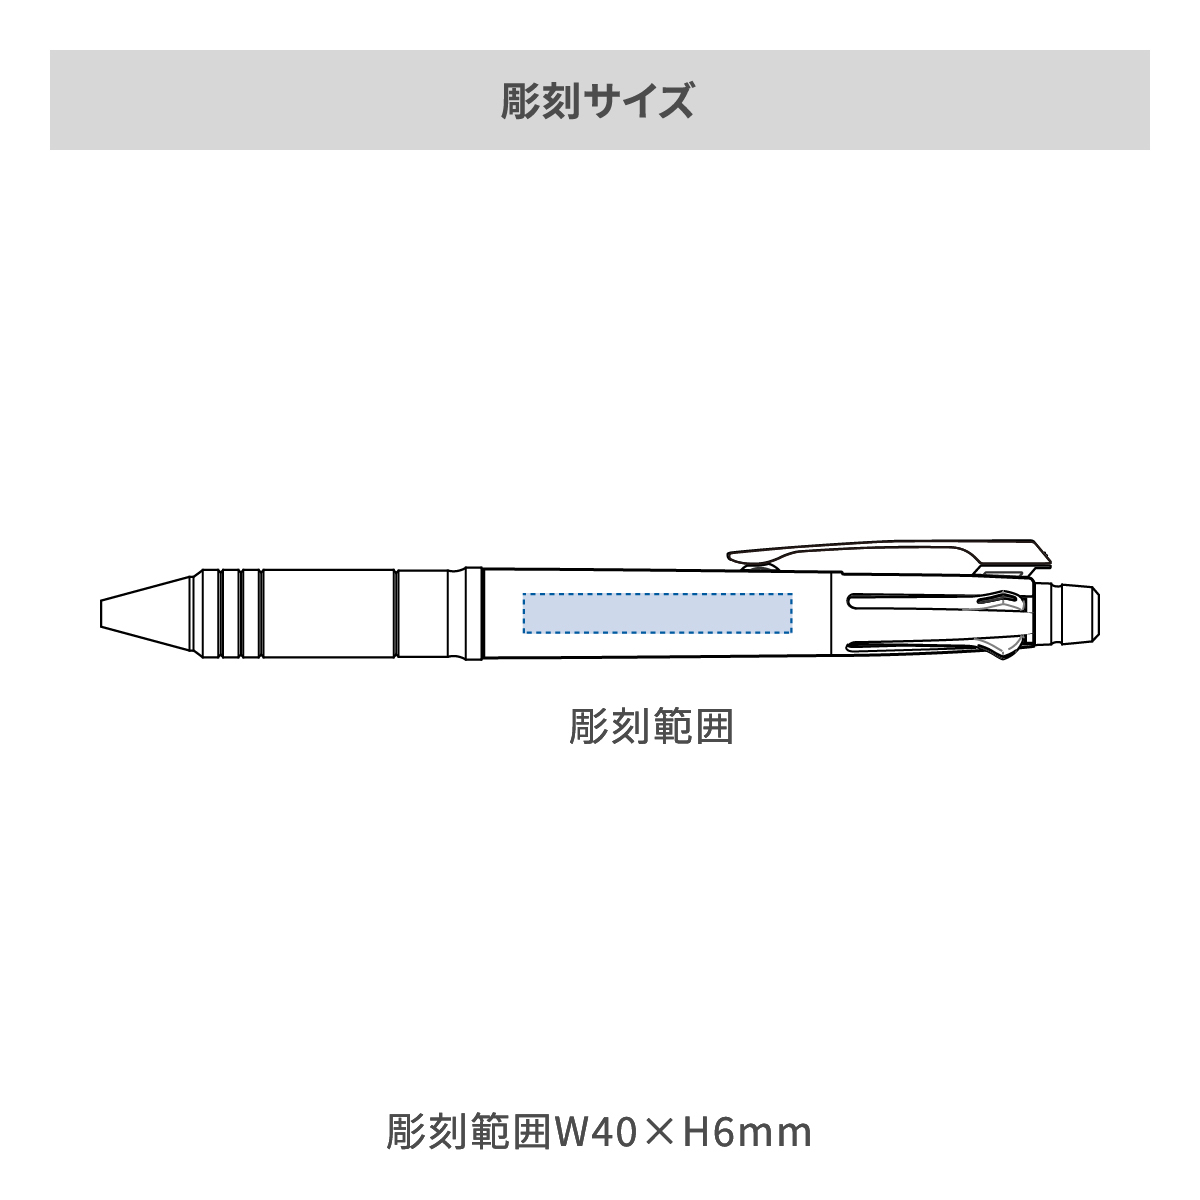 【短納期】三菱鉛筆 ジェットストリーム メタルエディション 多機能ペン 4&1 0.5mmの名入れ範囲